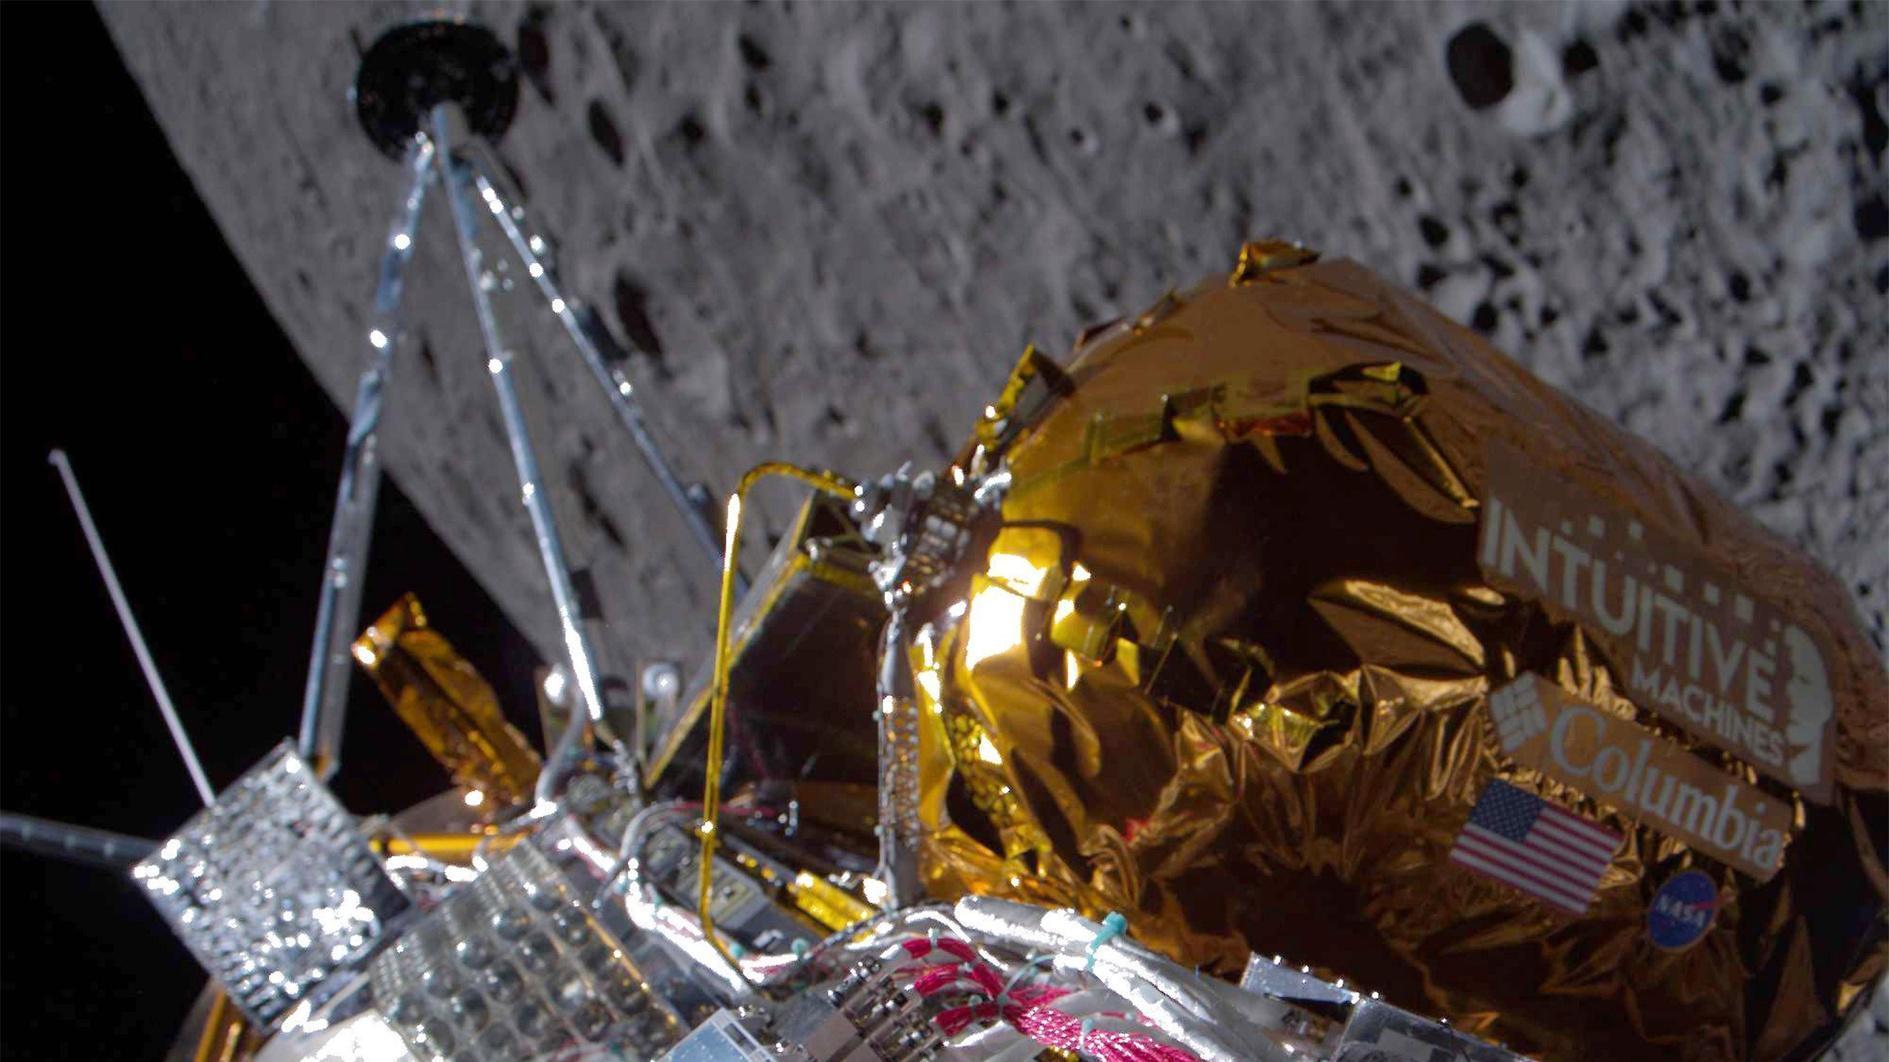 Amerika stuurt een ruimteschip terug naar de maan, eerst een particuliere sector